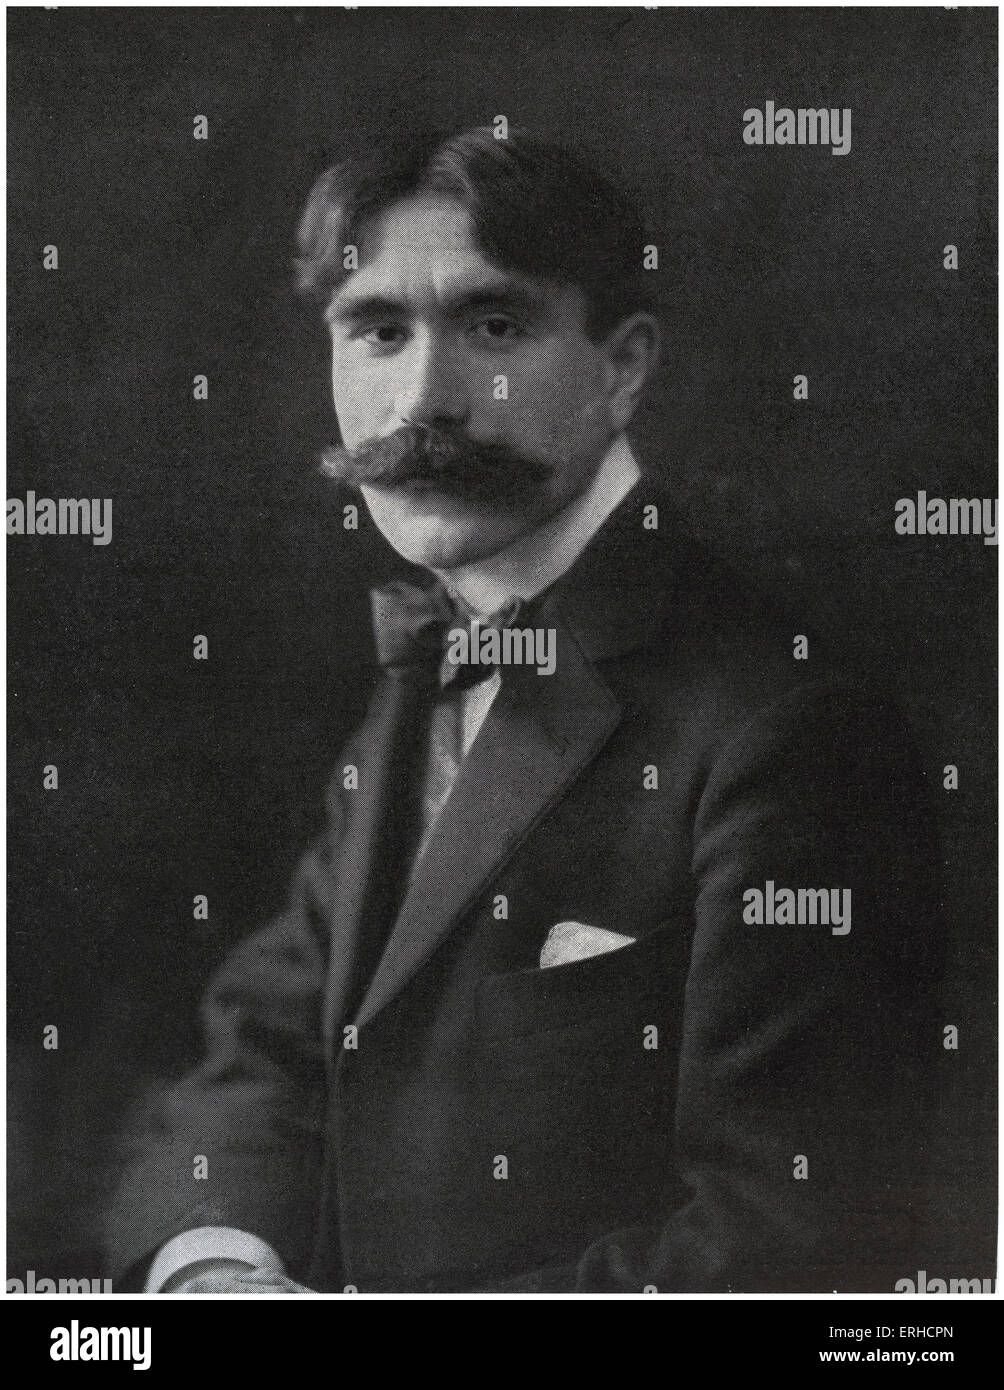 Gabriel Nigond, portrait, 1907. French author, 24 February 1877 - 4 January 1937. Stock Photo